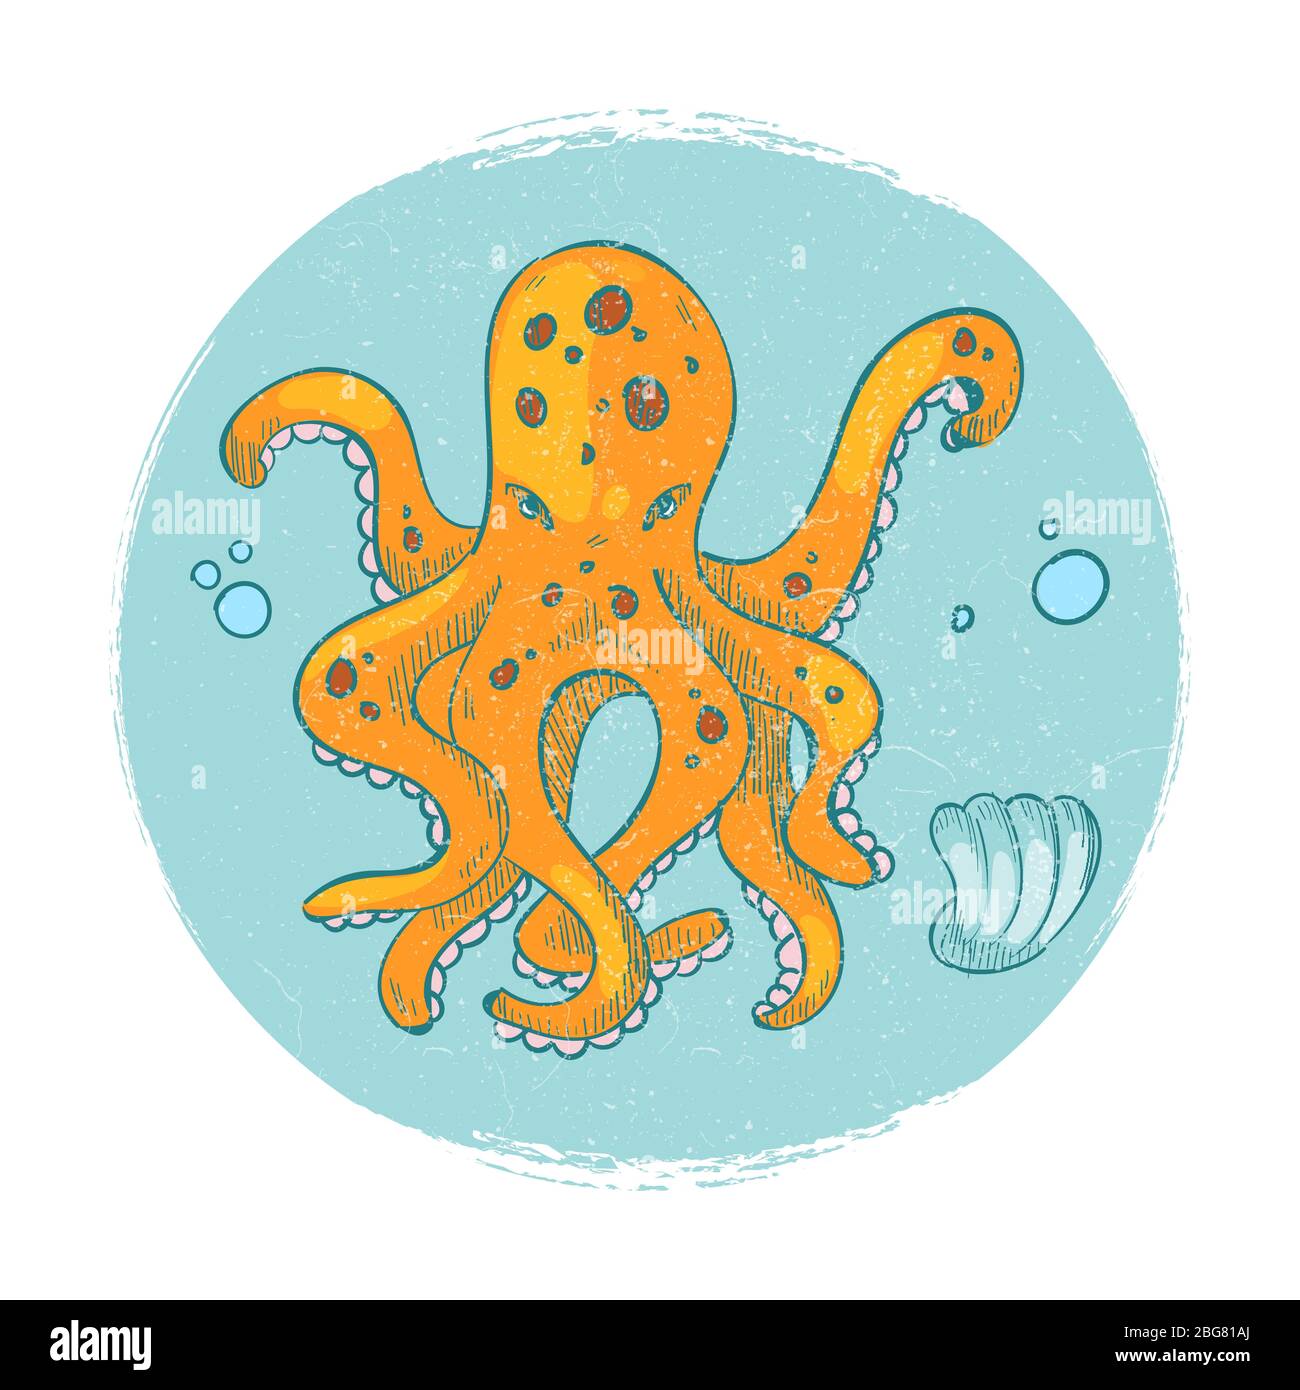 Emblème de l'octope du personnage de dessin animé. Illustration isolée du logo animal marin vectoriel Grunge Illustration de Vecteur